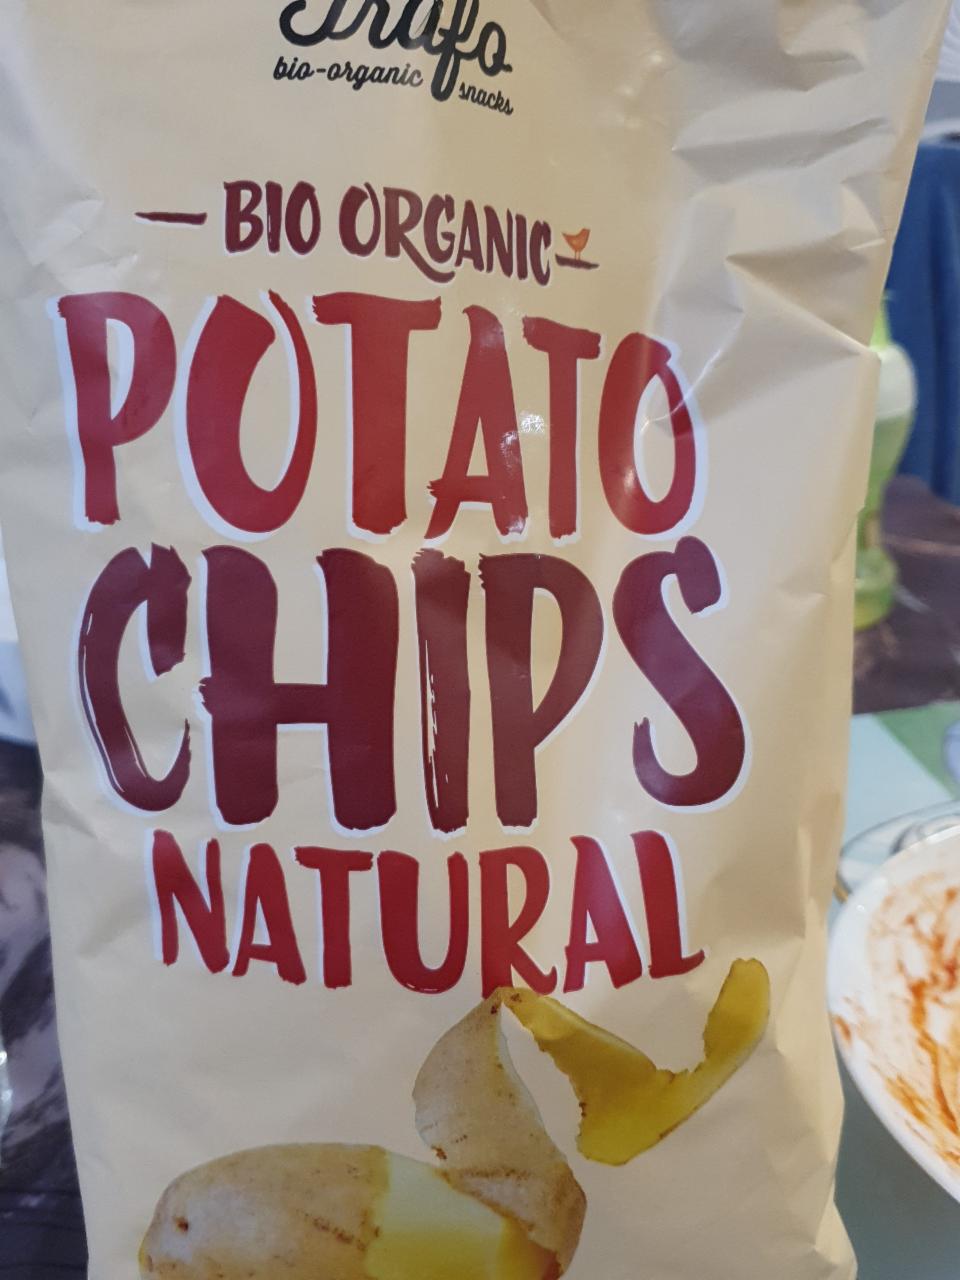 Fotografie - Potato chips natural